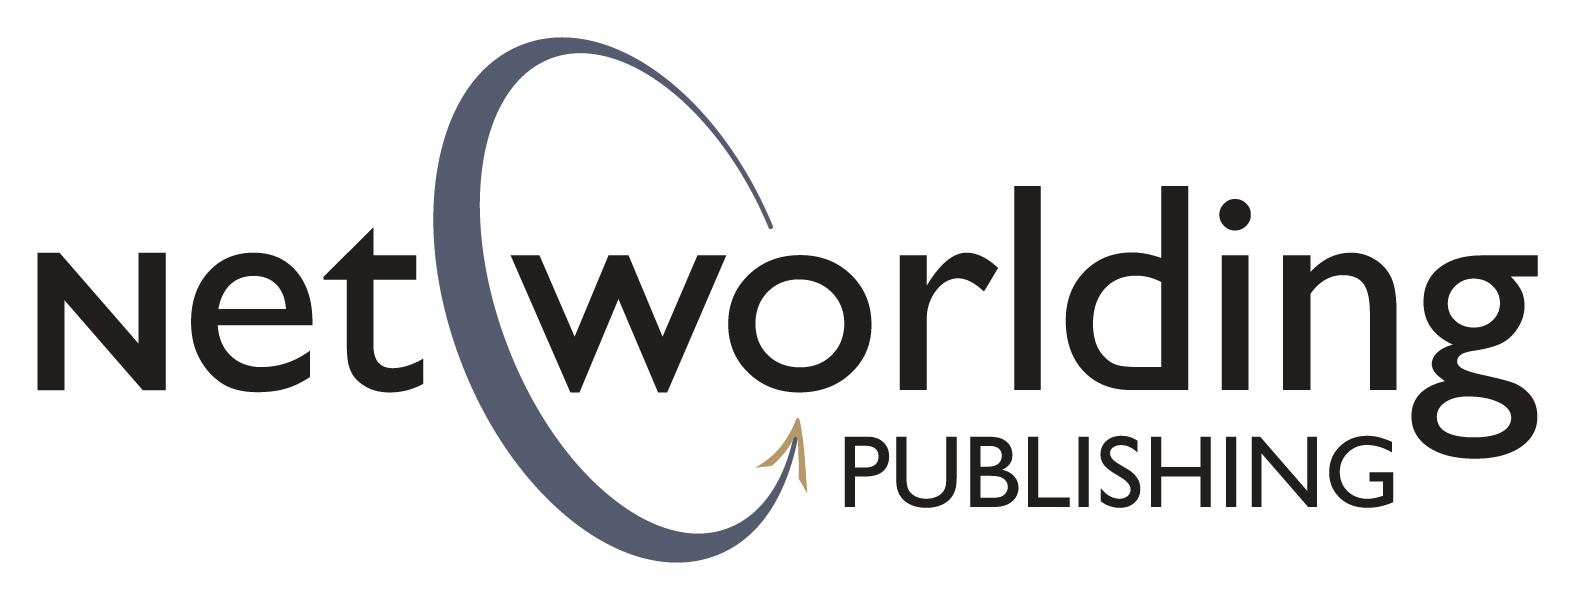 Networlding Publishing